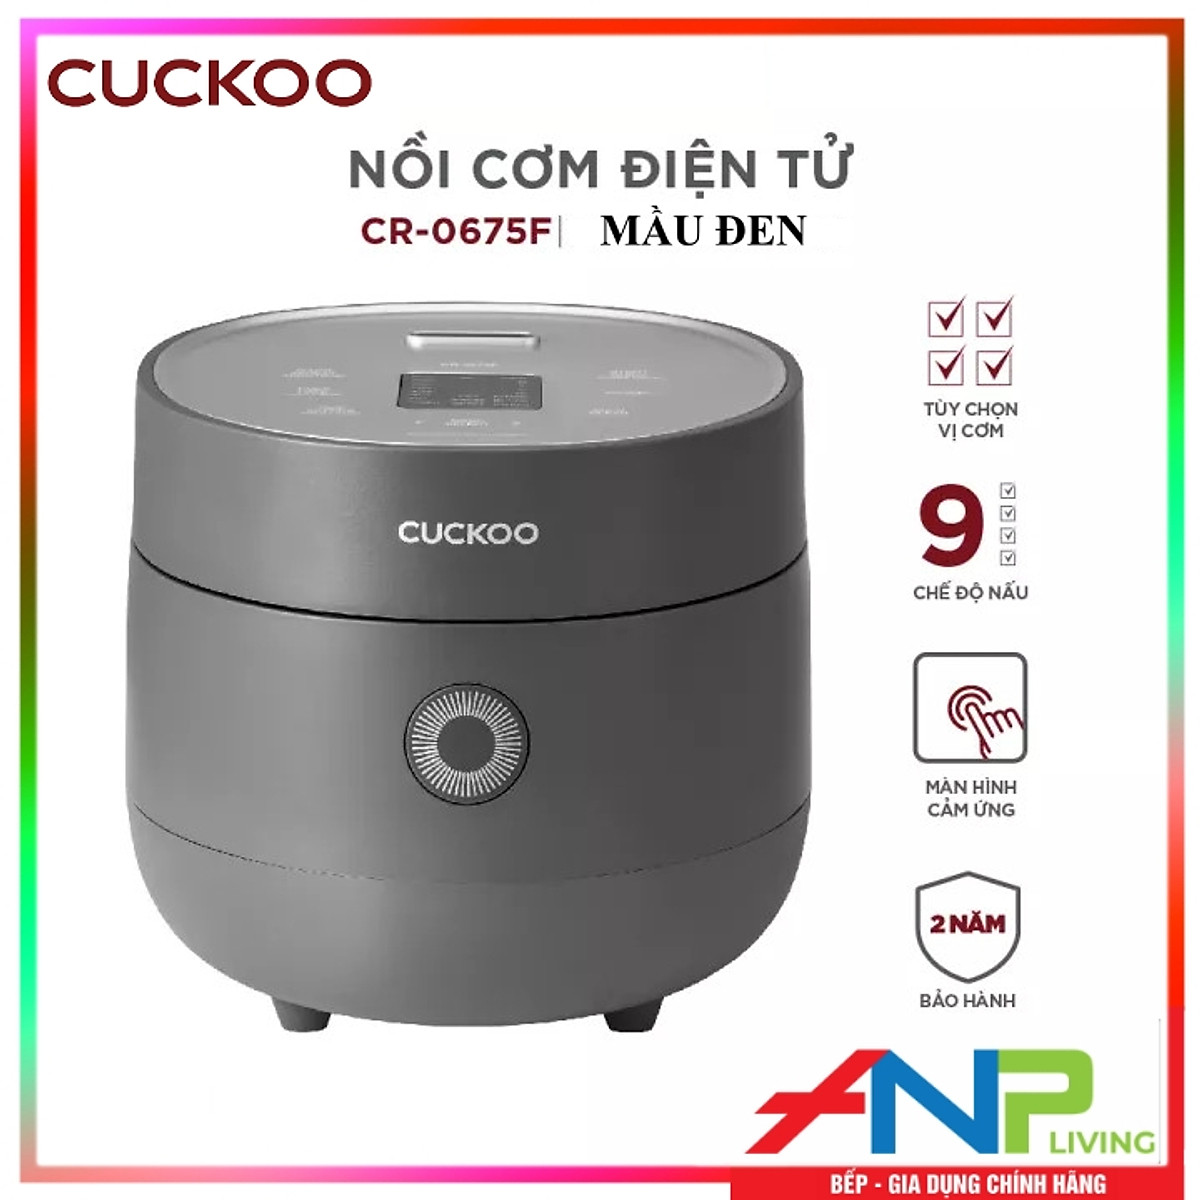 Nồi cơm điện tử Cuckoo 1.08L CR-0675F - Tùy chọn 3 vị cơm, 9 chế độ nấu tích hợp, chế độ tự động làm sạch - Hàng chính hãng